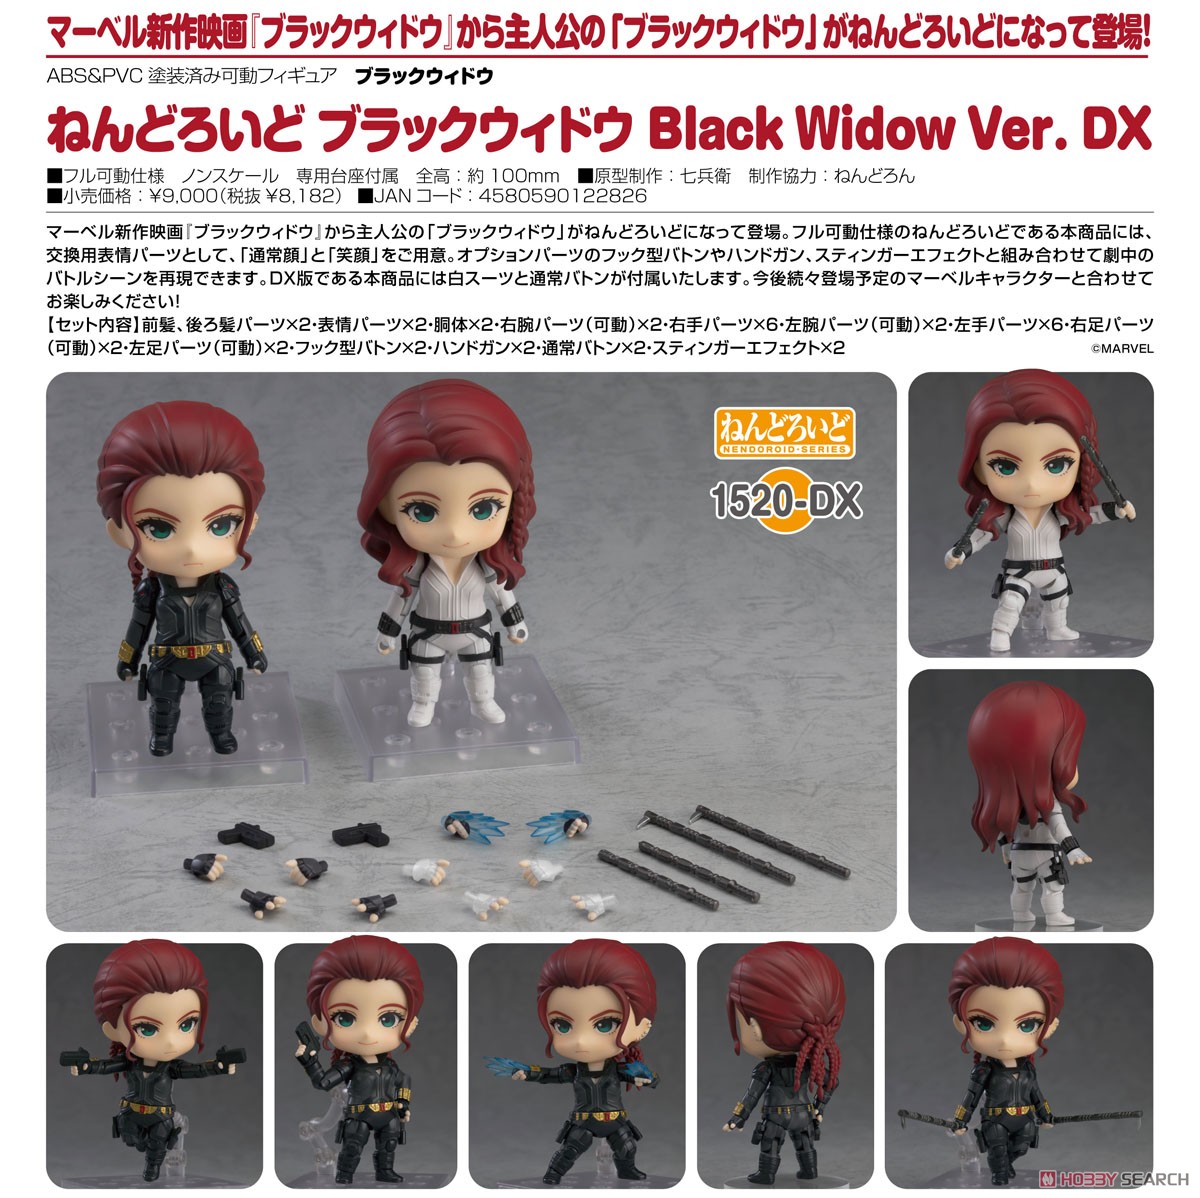 ねんどろいど『ブラックウィドウ Black Widow Ver. DX』デフォルメ可動フィギュア-009